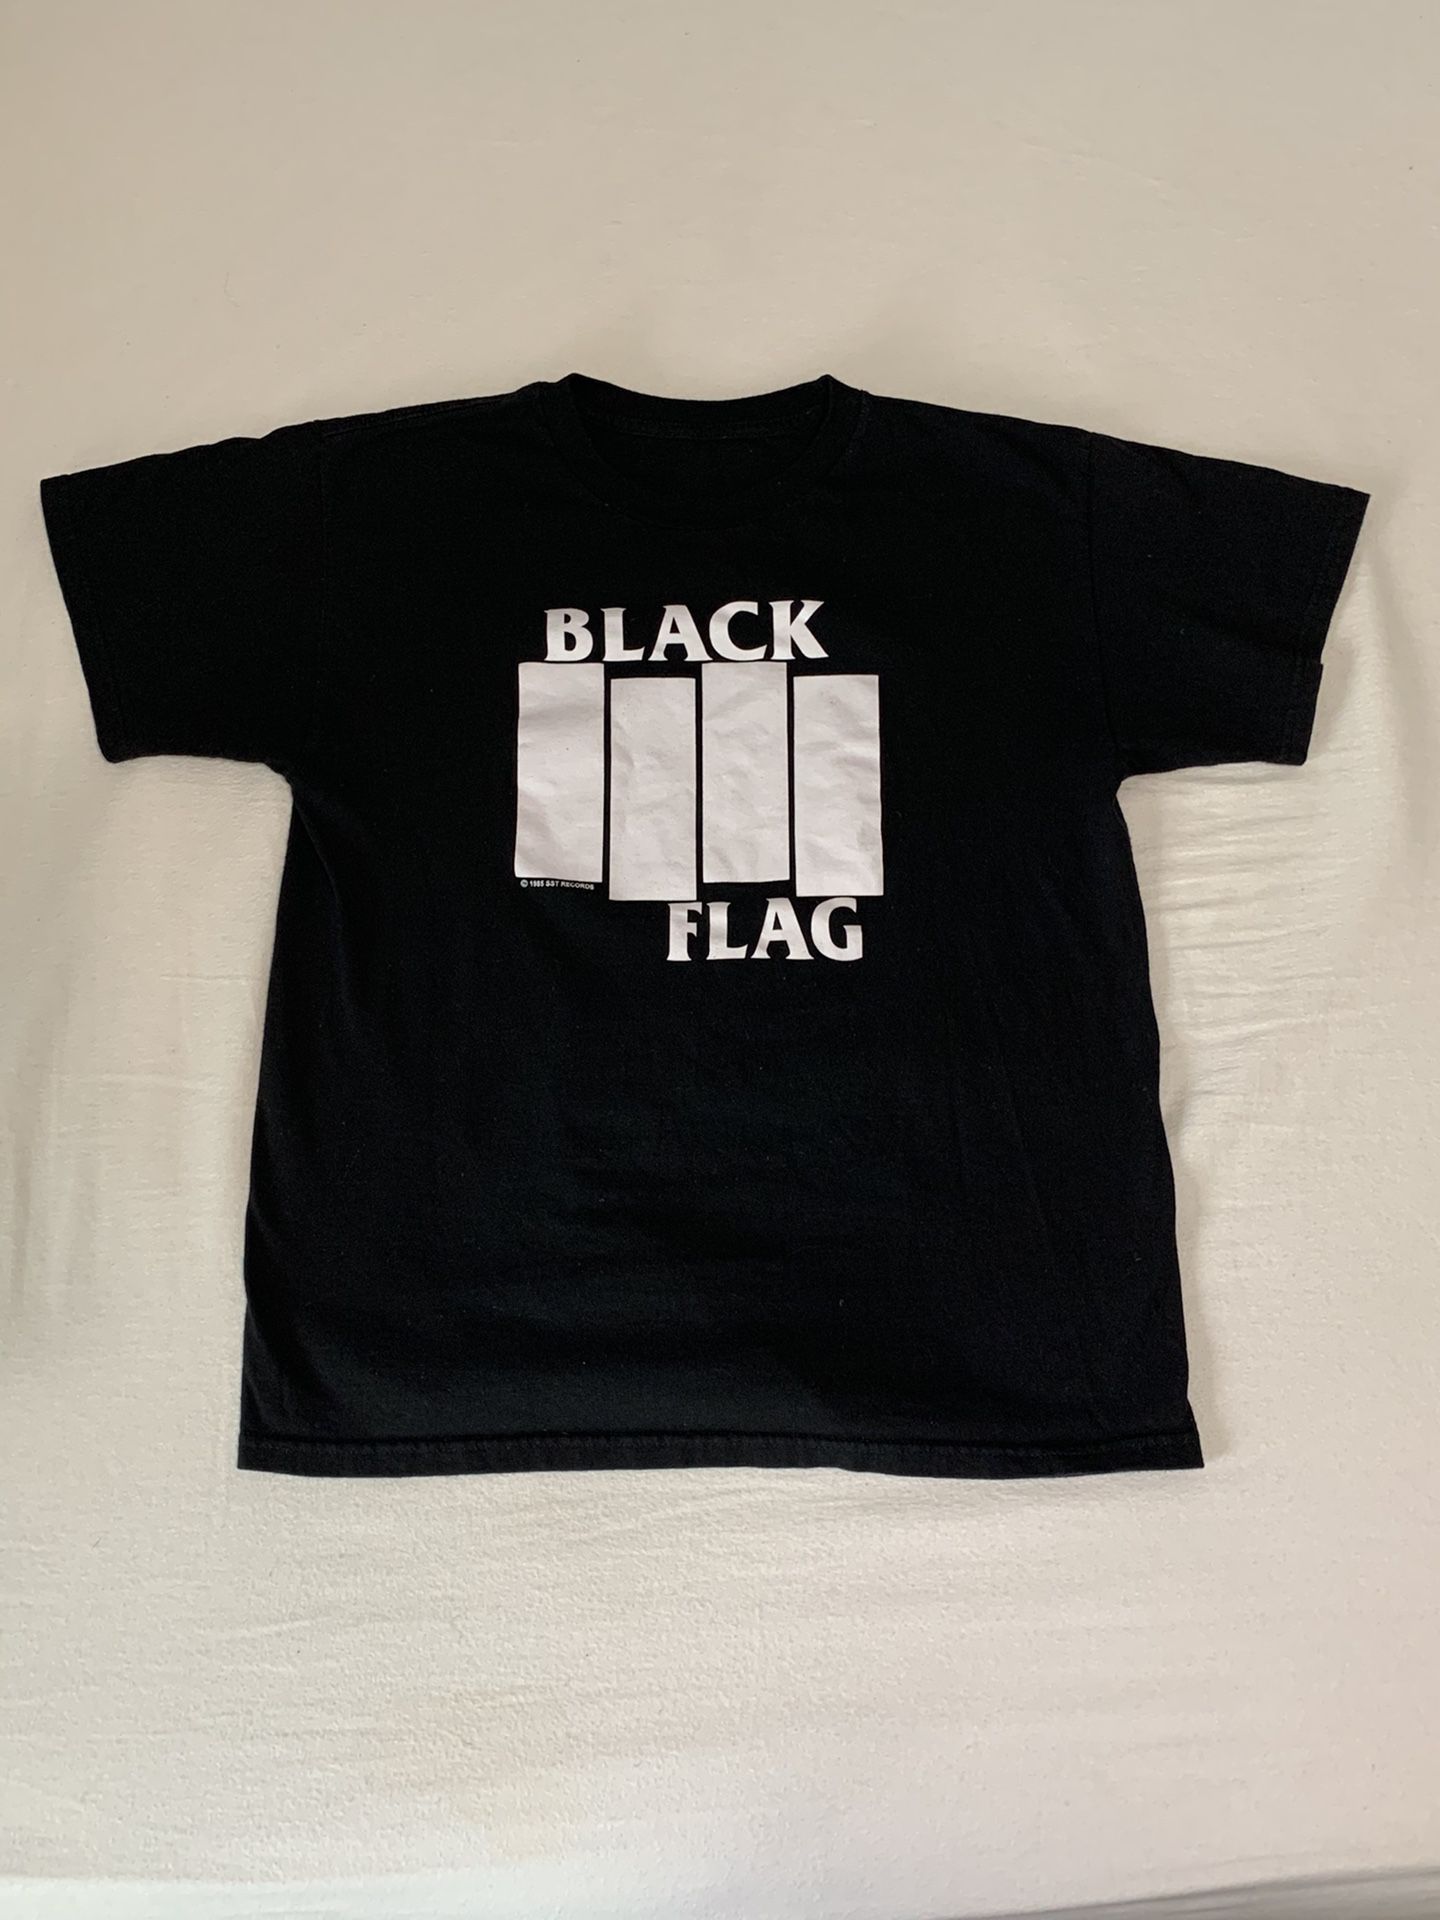 Vintage Black Flag tee